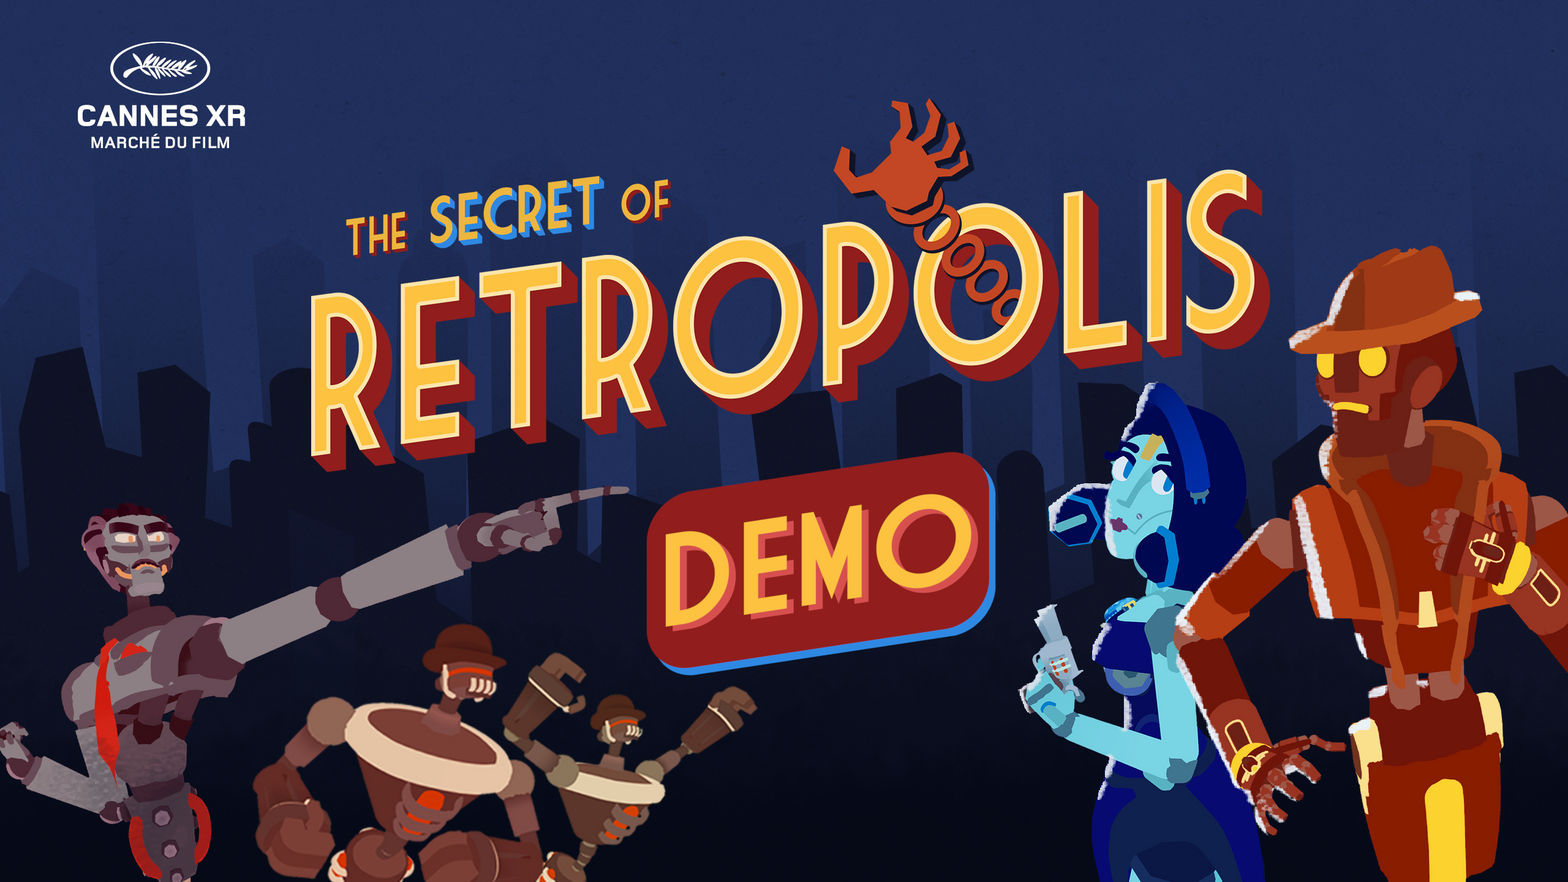 The Secret of Retropolis Demo